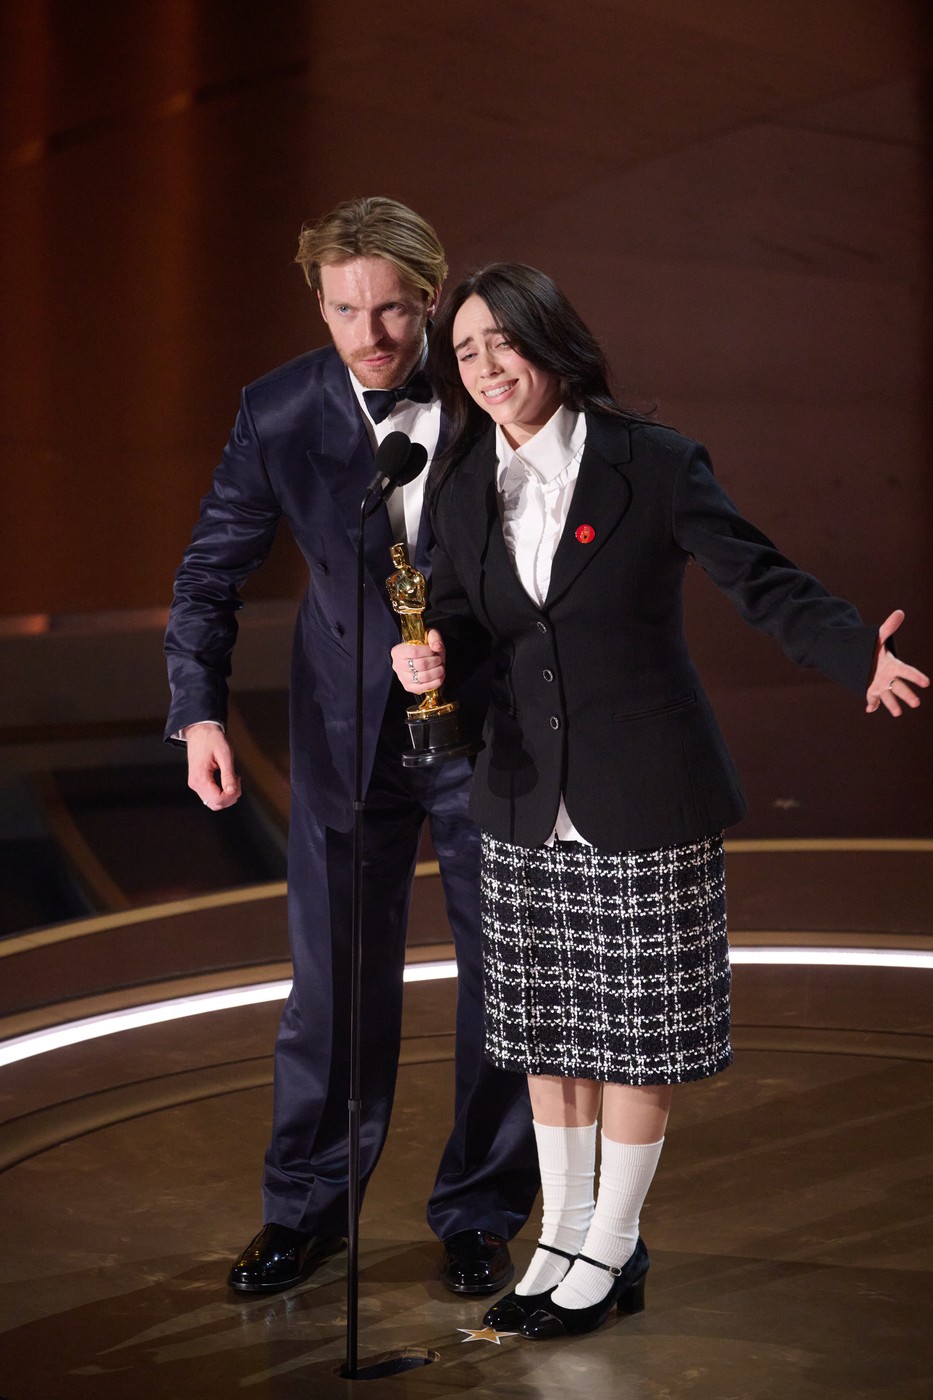 Billie Eilish a câștigat al doilea premiu Oscar din carieră. Aici cei doi sunt pe scenă și mulțumesc pentru premiu / Profimedia Images